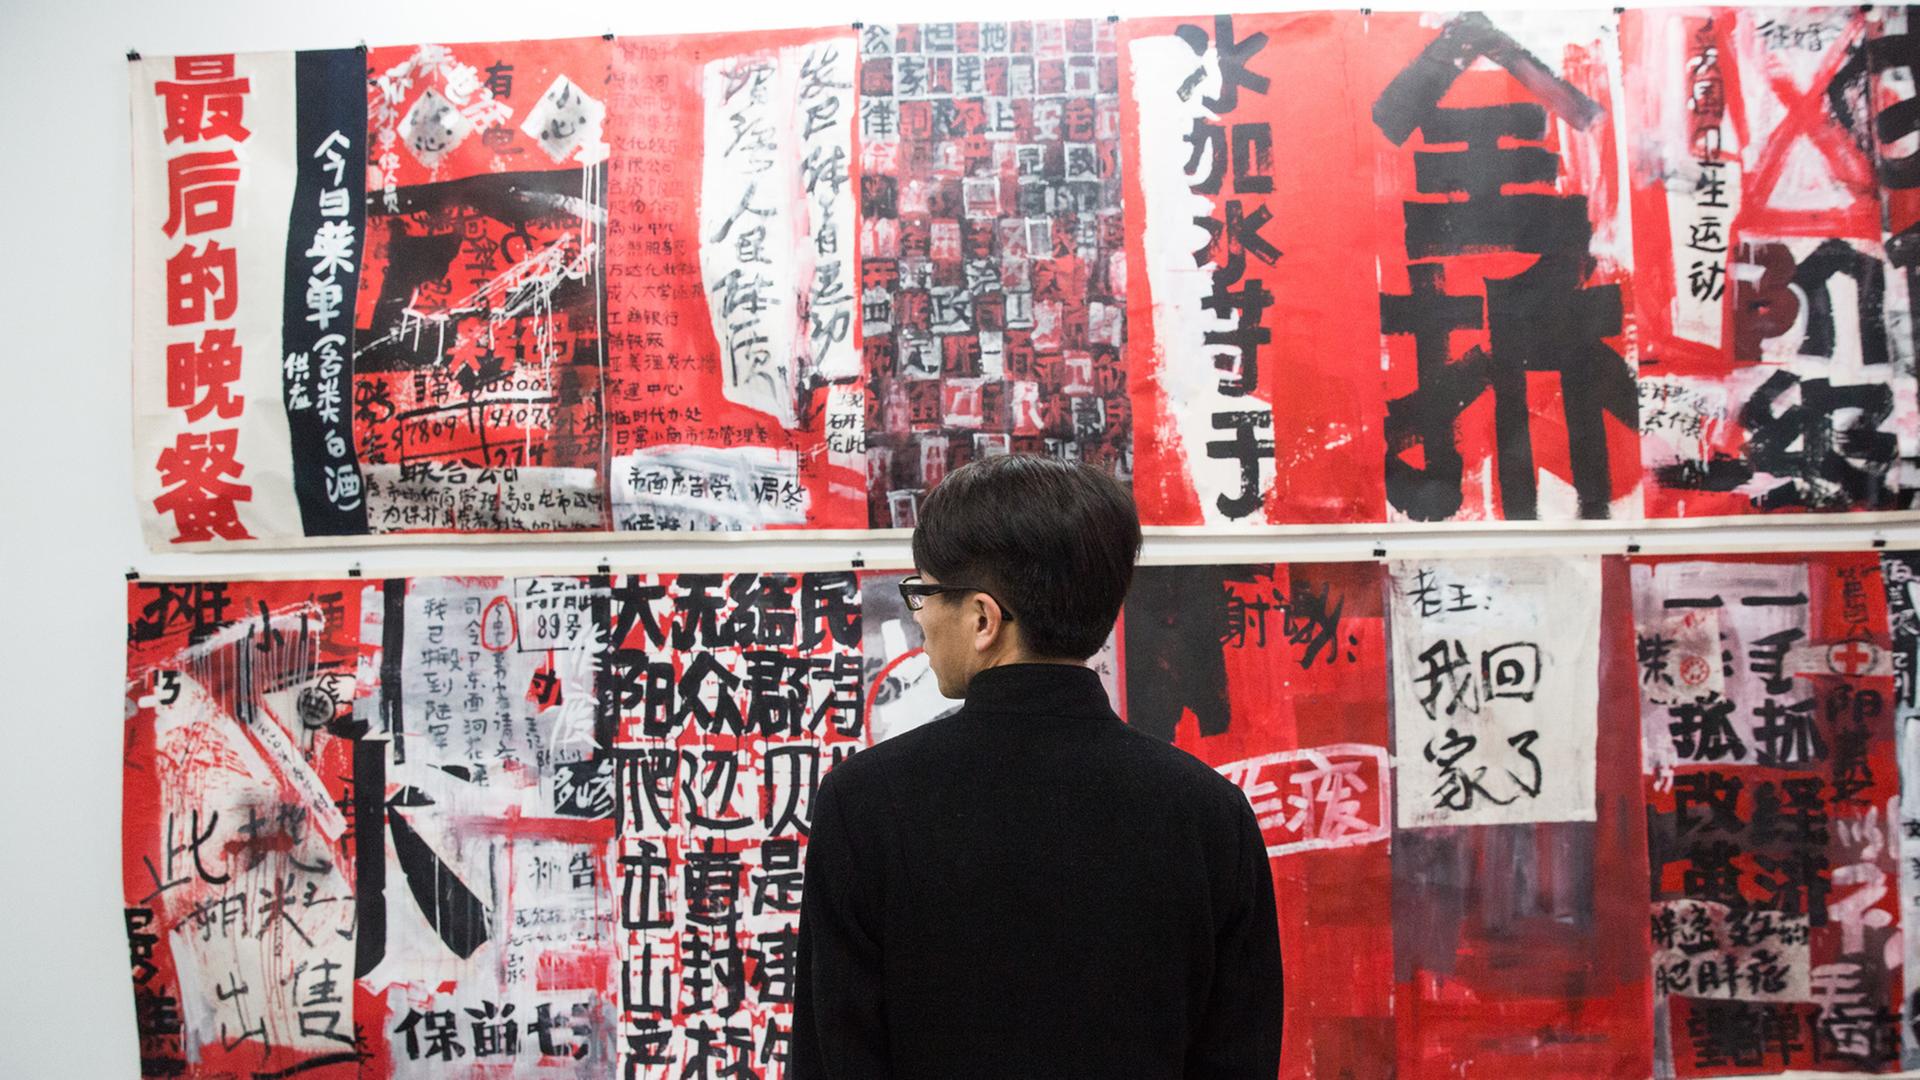 Ein Mann betrachtet in Hamburg Zeichnungen des chinesischen Künstlers Wu Shanzhuan in der Ausstellung "Secret Signs" der Sammlung Falckenberg.